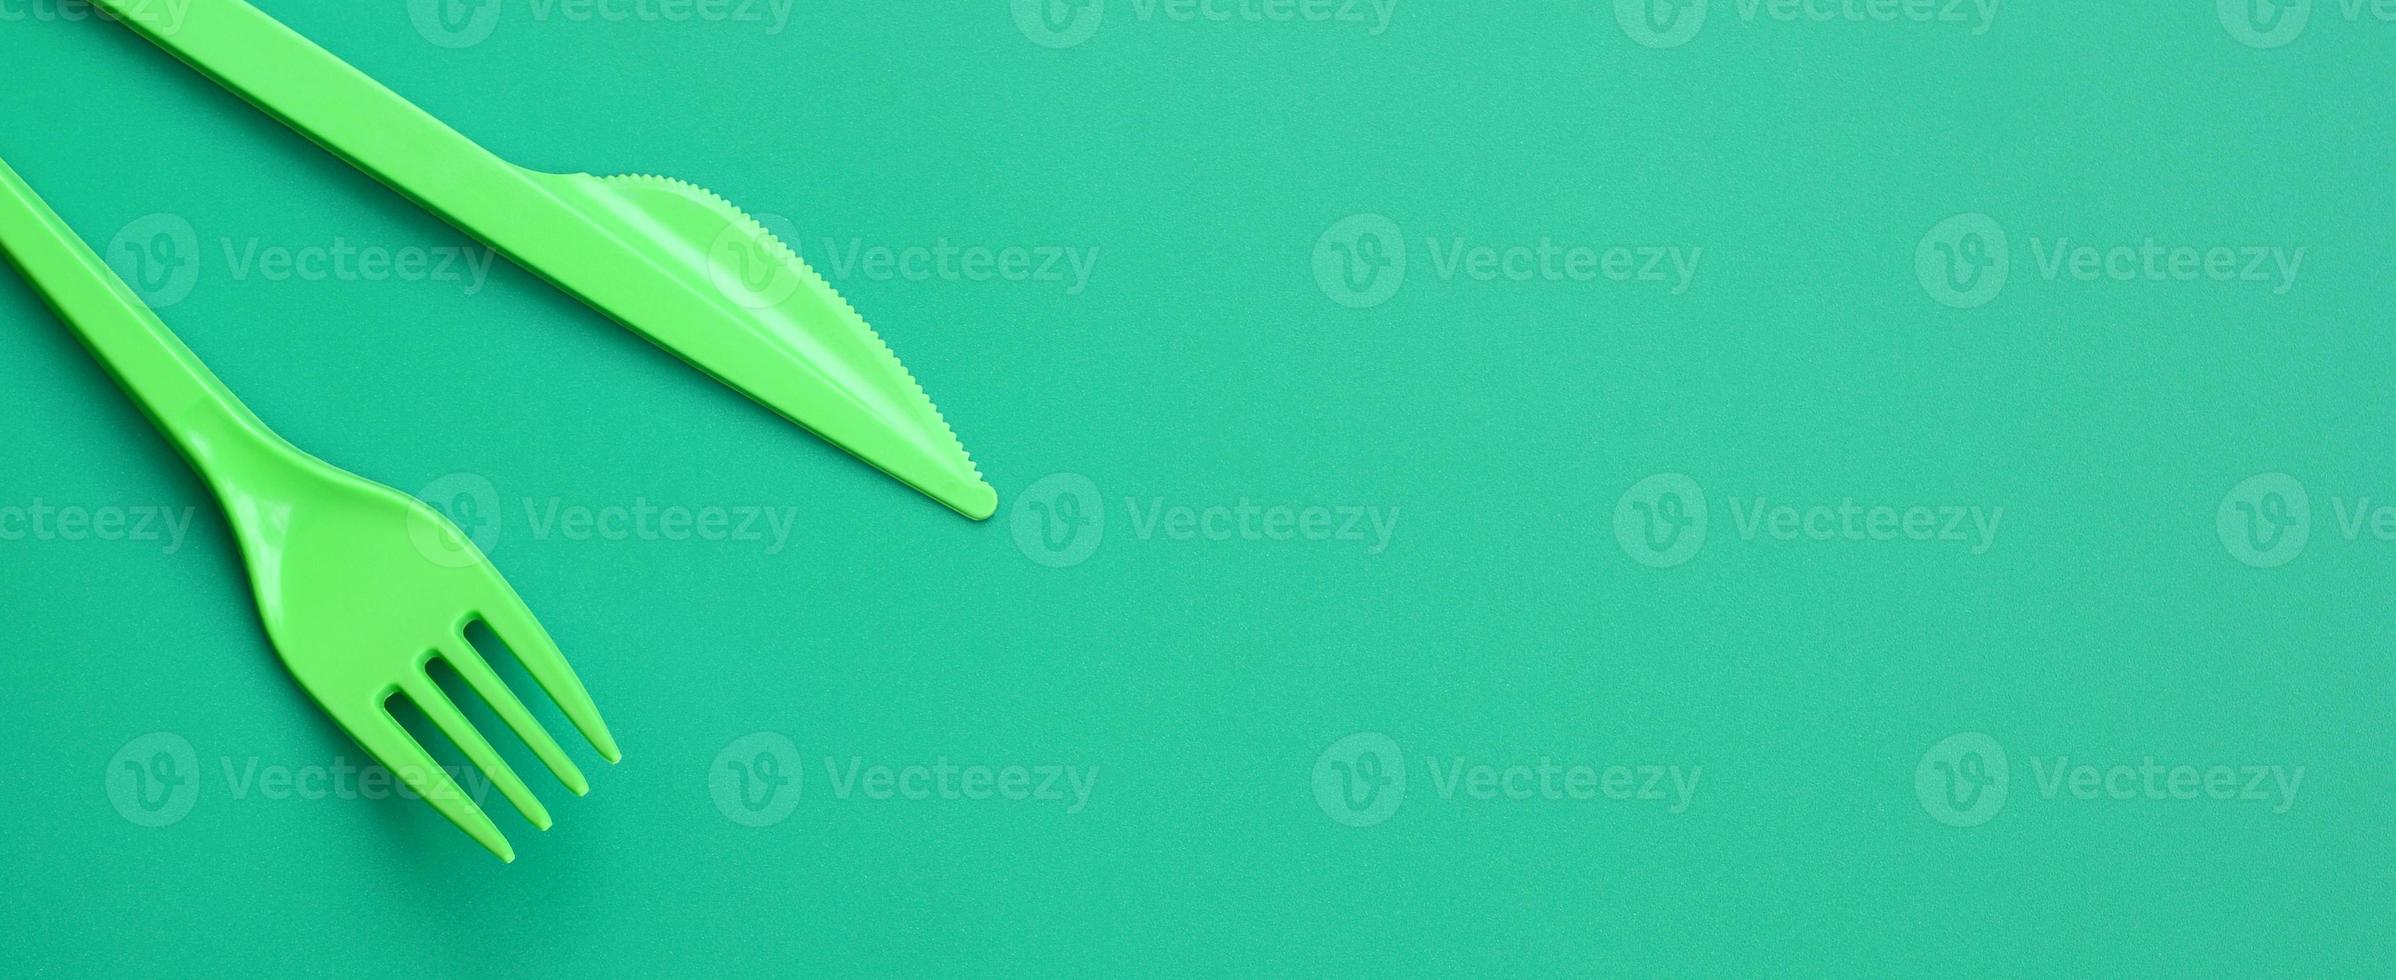 disponibel plast bestick grön. plast gaffel och kniv lögn på en grön bakgrund yta foto